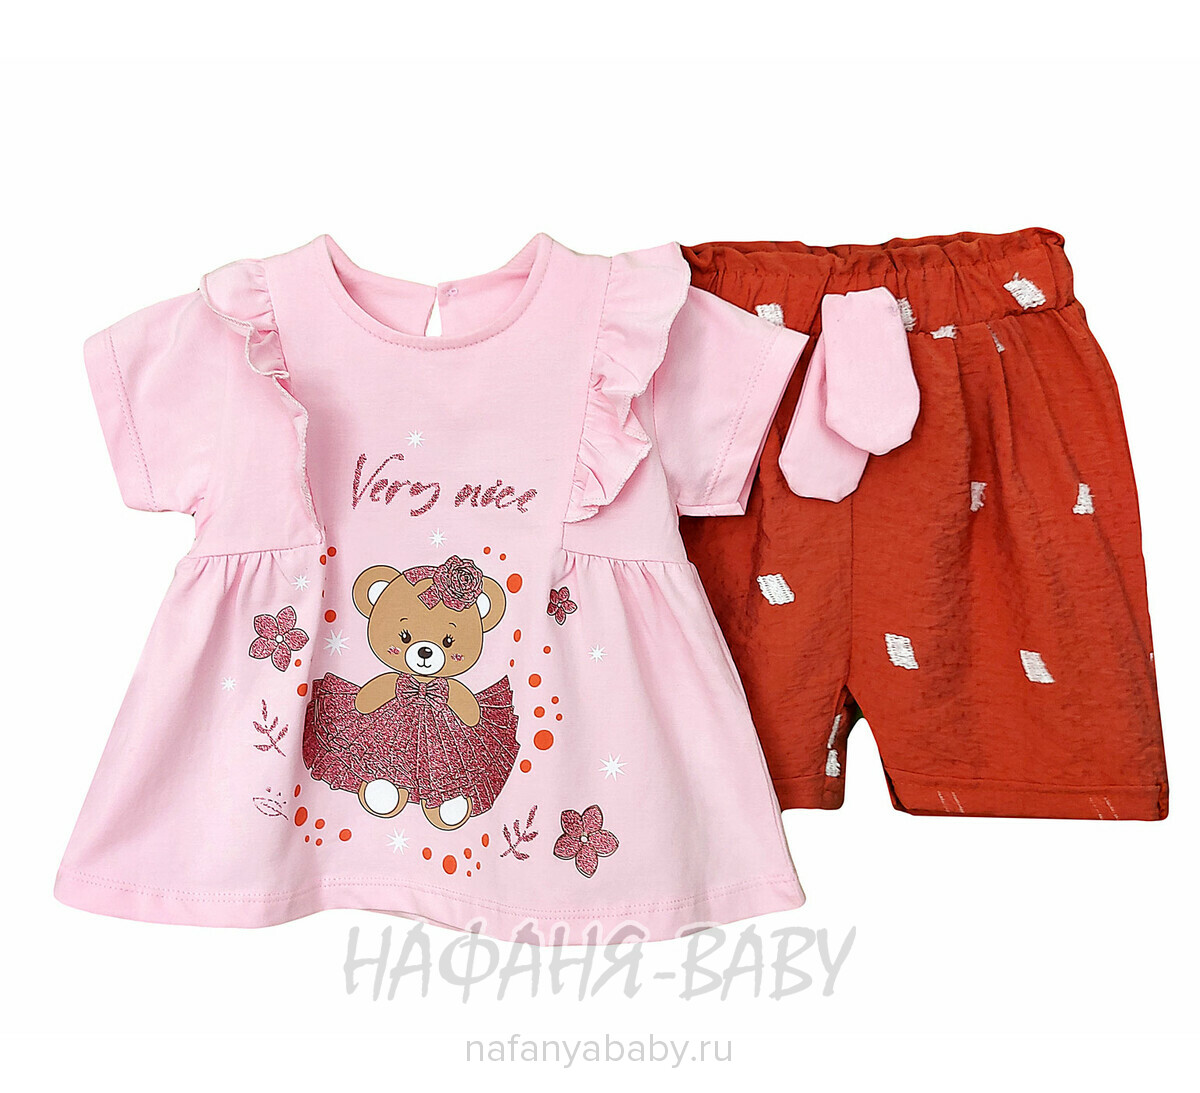 Детский костюм (платье - туника + шорты) BEARS арт. 10080, от 6 до 24 мес, цвет розовый, оптом Турция